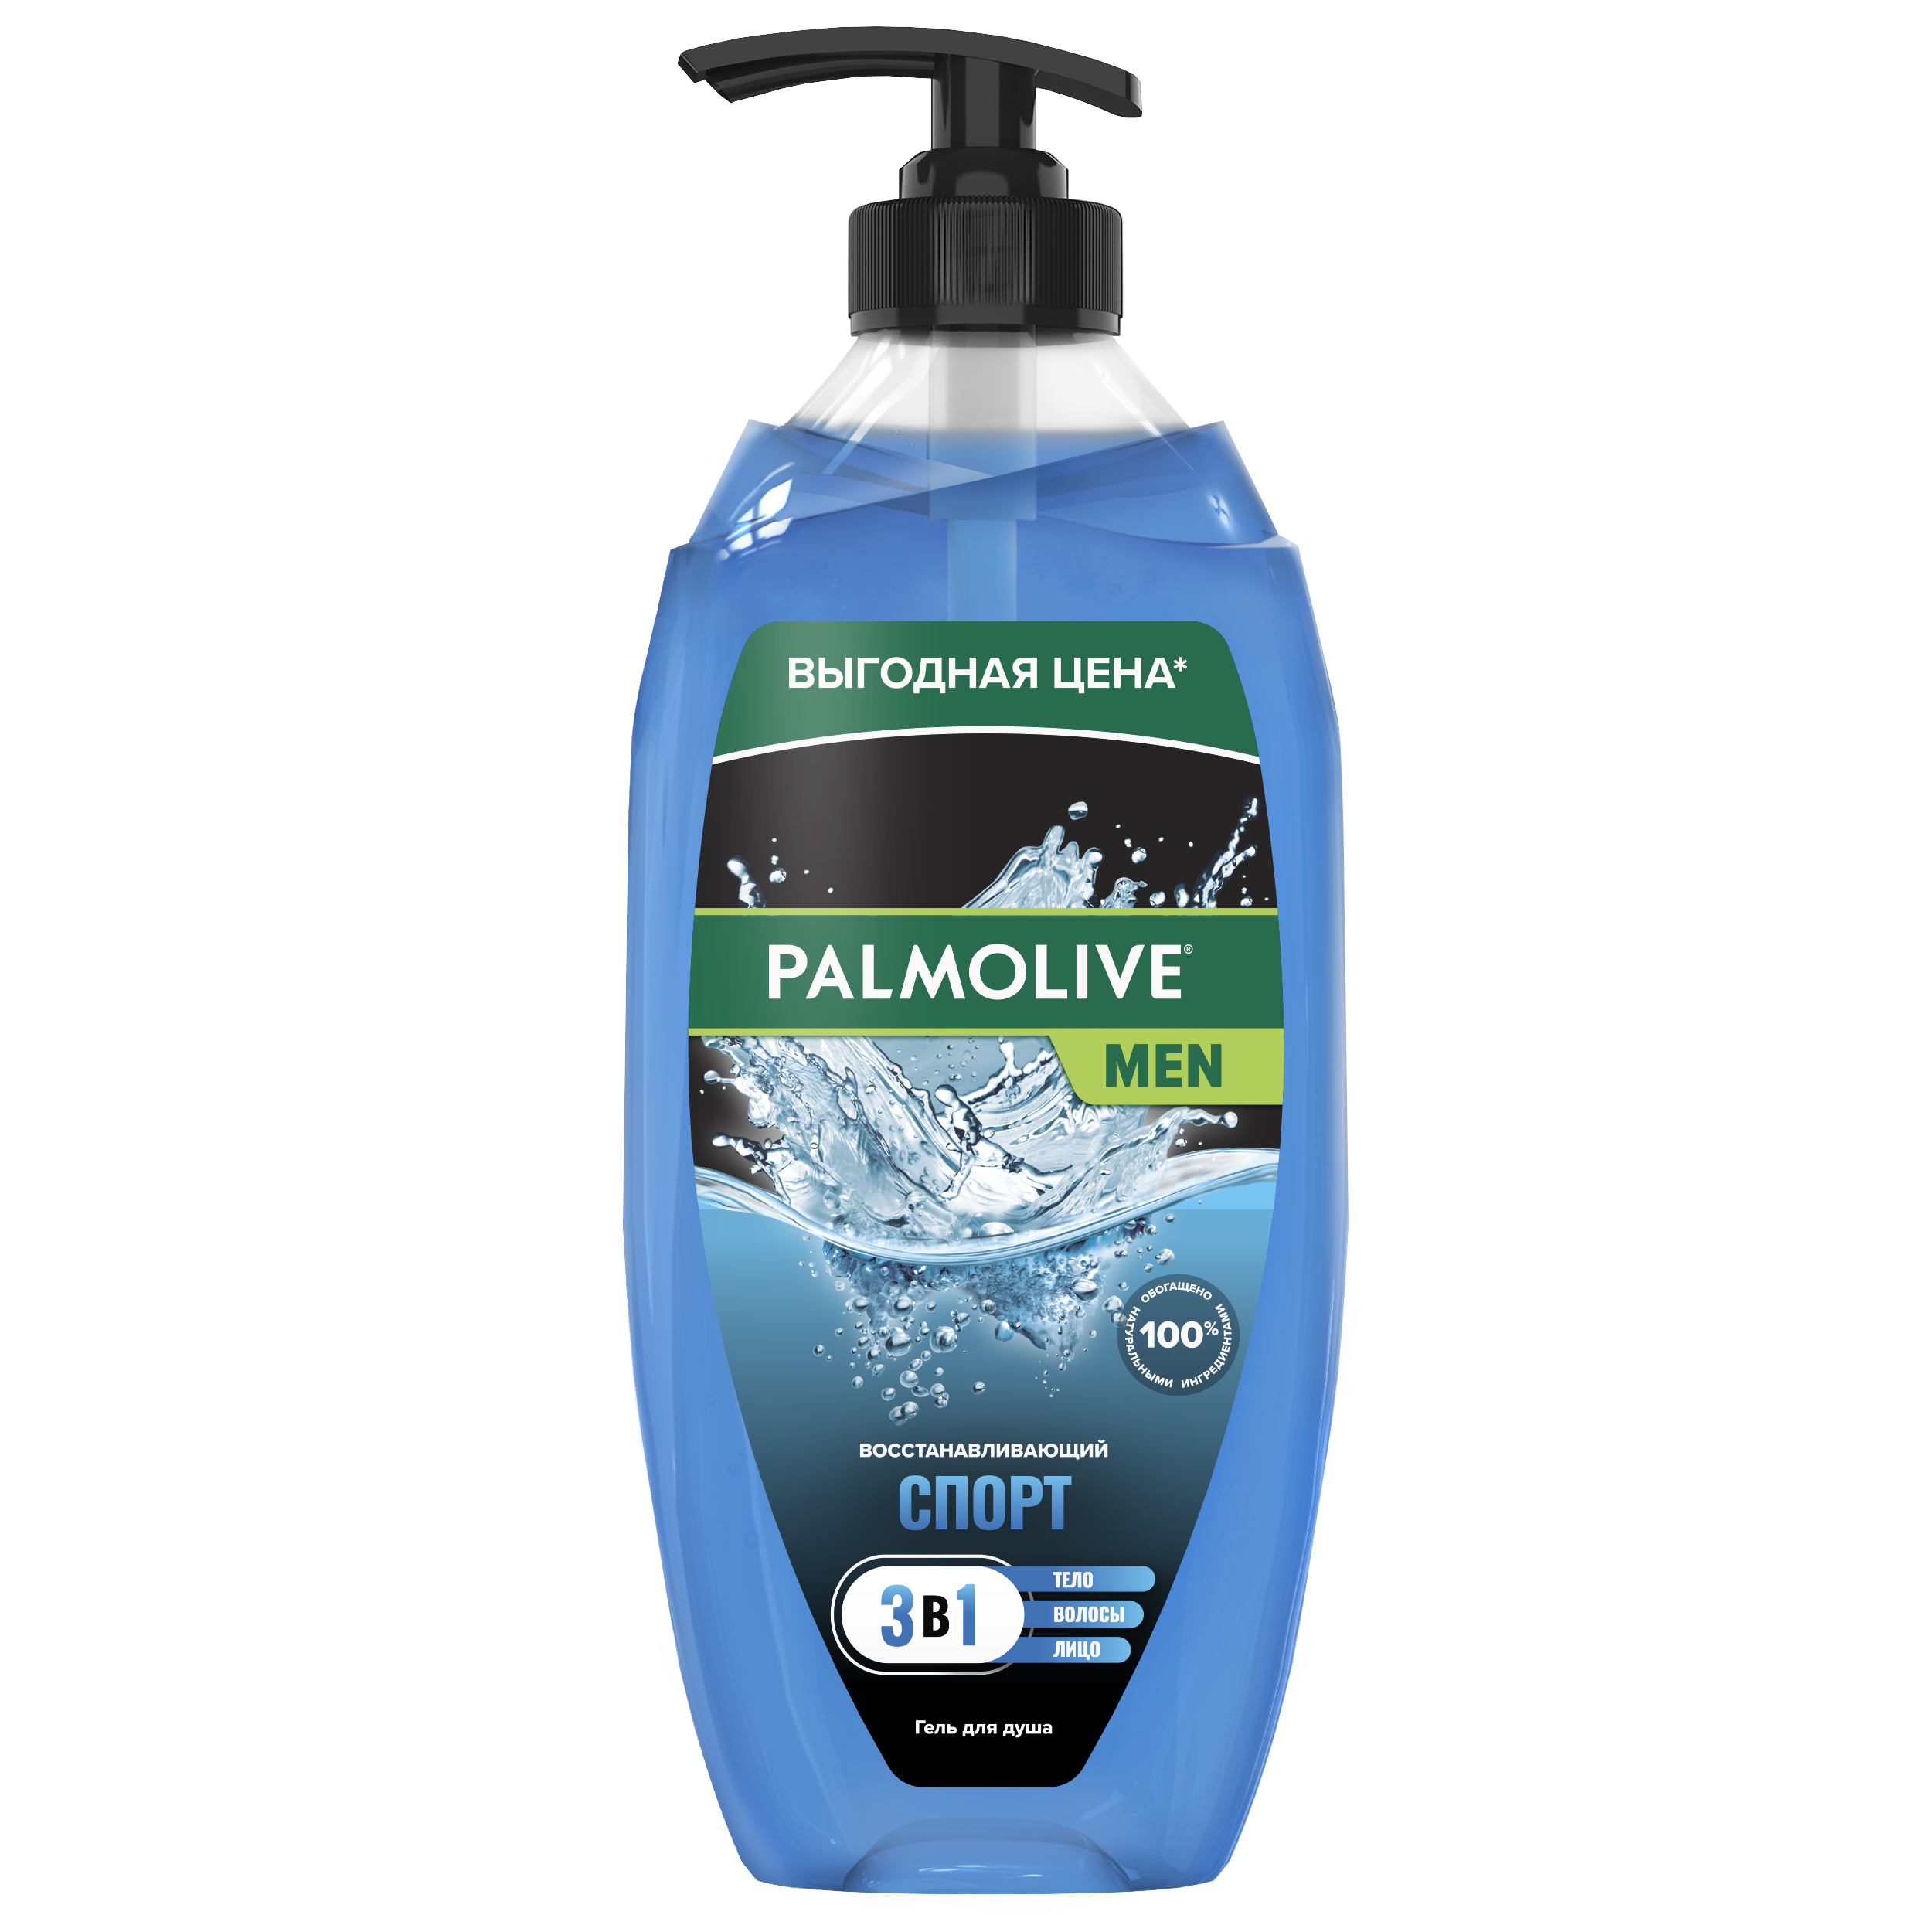 Гель для душа Palmolive Спорт Восстанавливающий 3 в 1 мужской 750 мл мужской дезодорант paul medison homme deodorant spray с ароматом мускуса 200 мл